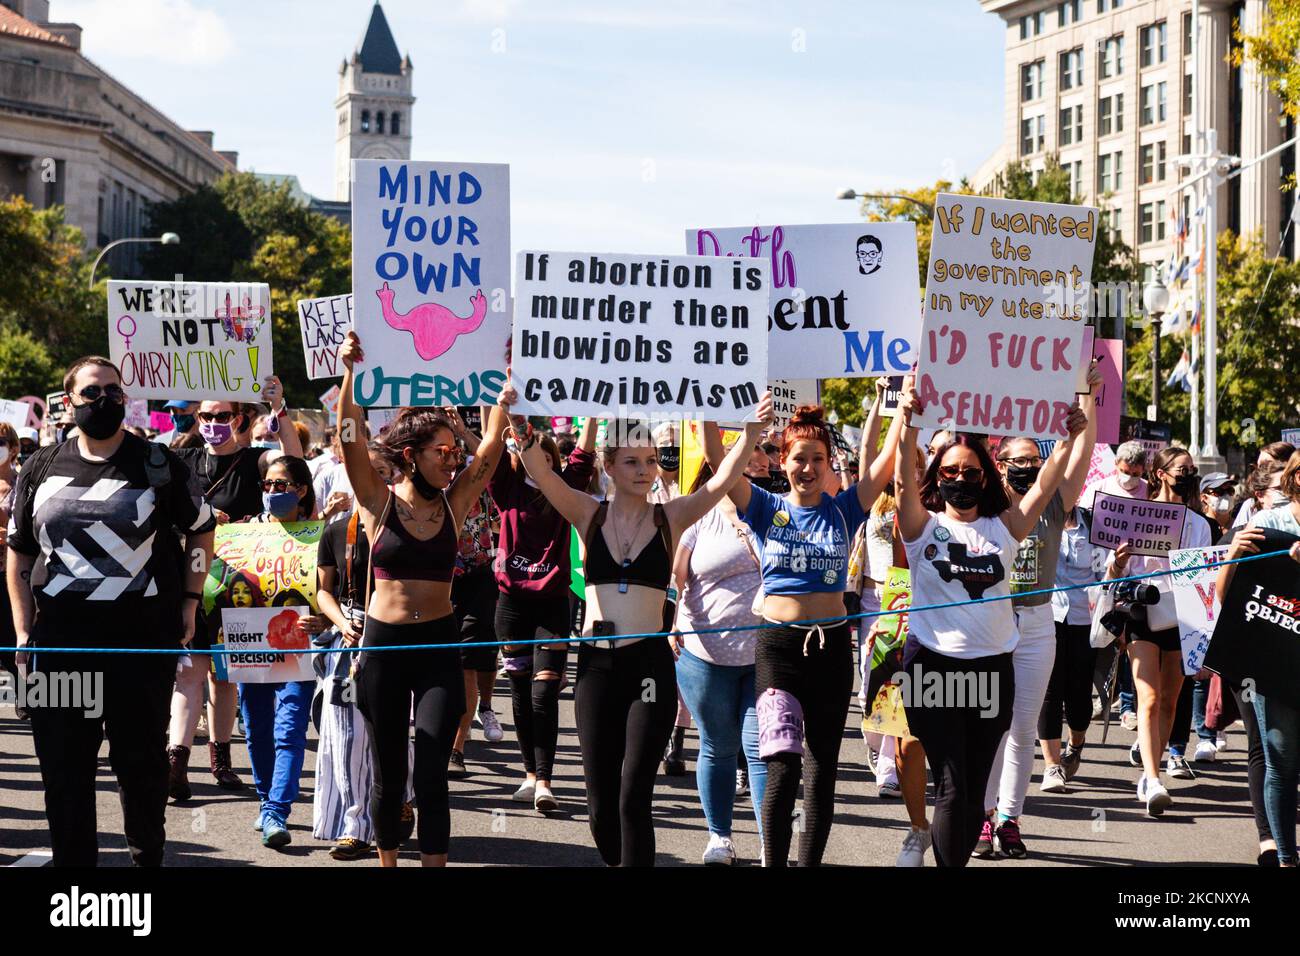 Les manifestants en route de Freedom Plaza à la Cour suprême des États-Unis lors de la Marche des femmes pour la justice pour l'avortement à Washington, DC. Les manifestants exigent que le gouvernement américain protège les droits génésiques des femmes et leur accès à l'avortement dans tout le pays. Plus précisément, ils demandent au Congrès d'adopter la loi sur la protection de la santé des femmes (WHPA) et CHAQUE loi, qui garantissent l'accès à l'avortement et exigent qu'il soit couvert par une assurance. Plus de 600 manifestations satellites ont lieu à 2 octobre dans tout le pays. Les événements sont en partie en réponse aux lois restrictives anti-avortement récemment adoptées au Texas et au Mississippi, an Banque D'Images